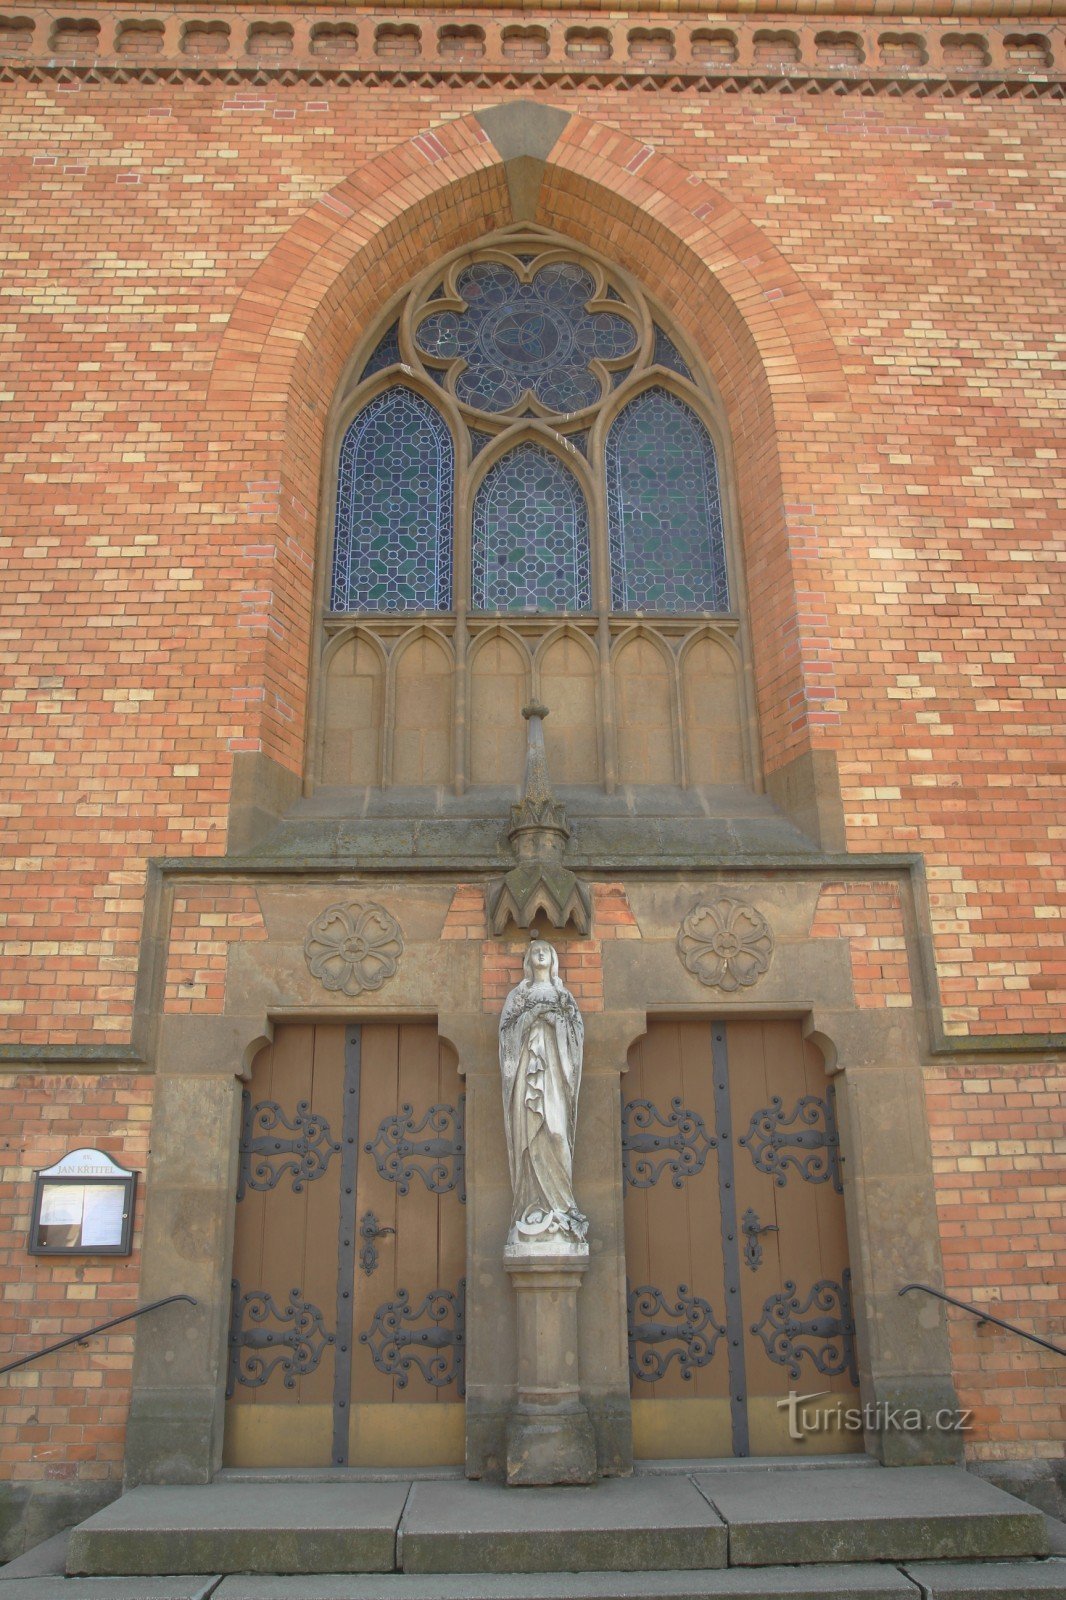 Detalje af hovedindgangen til kirken